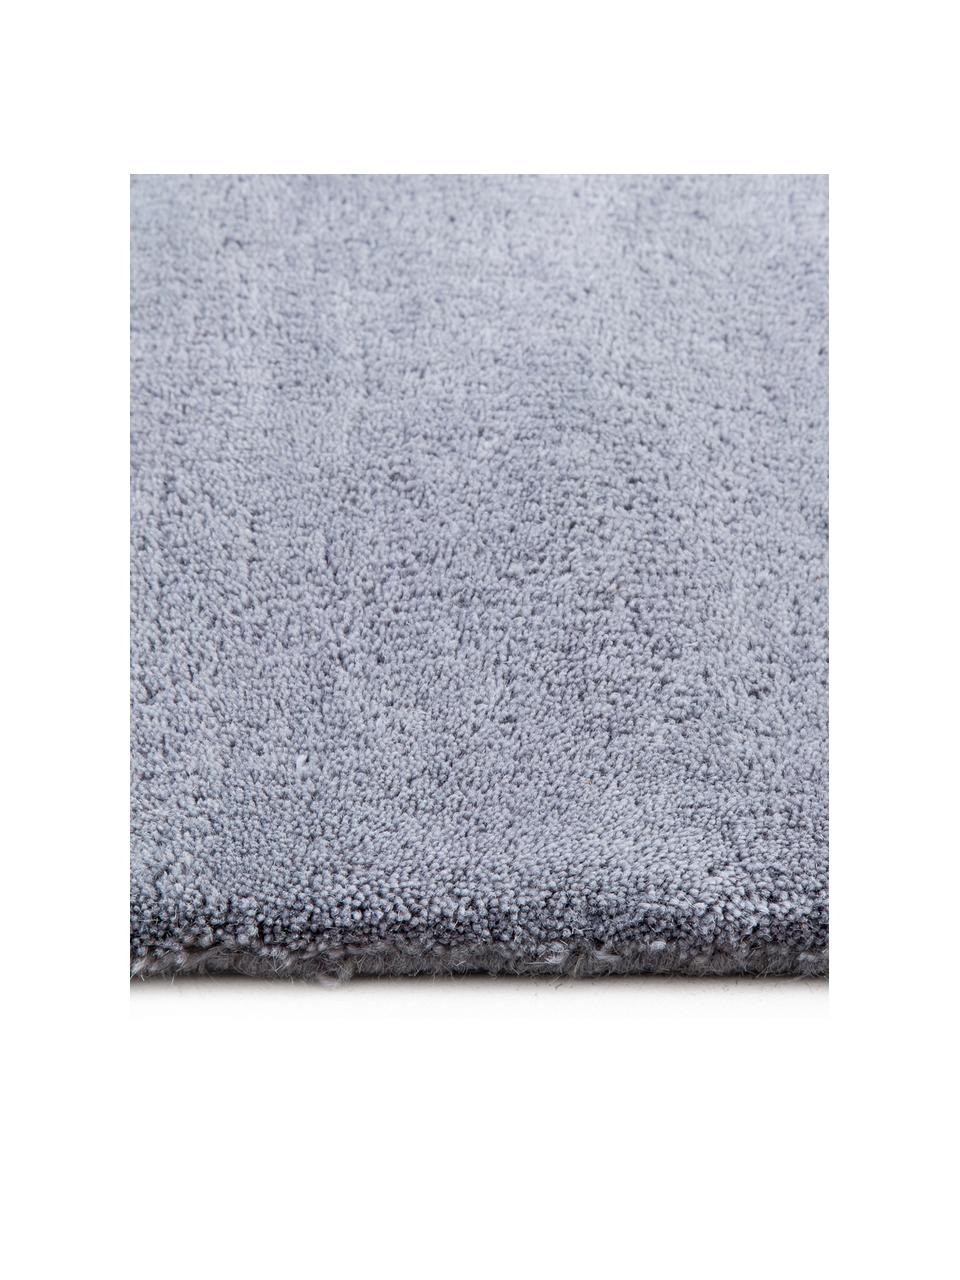 Ručně všívaný vlněný koberec Satomi, Antracitová, odstíny šedé